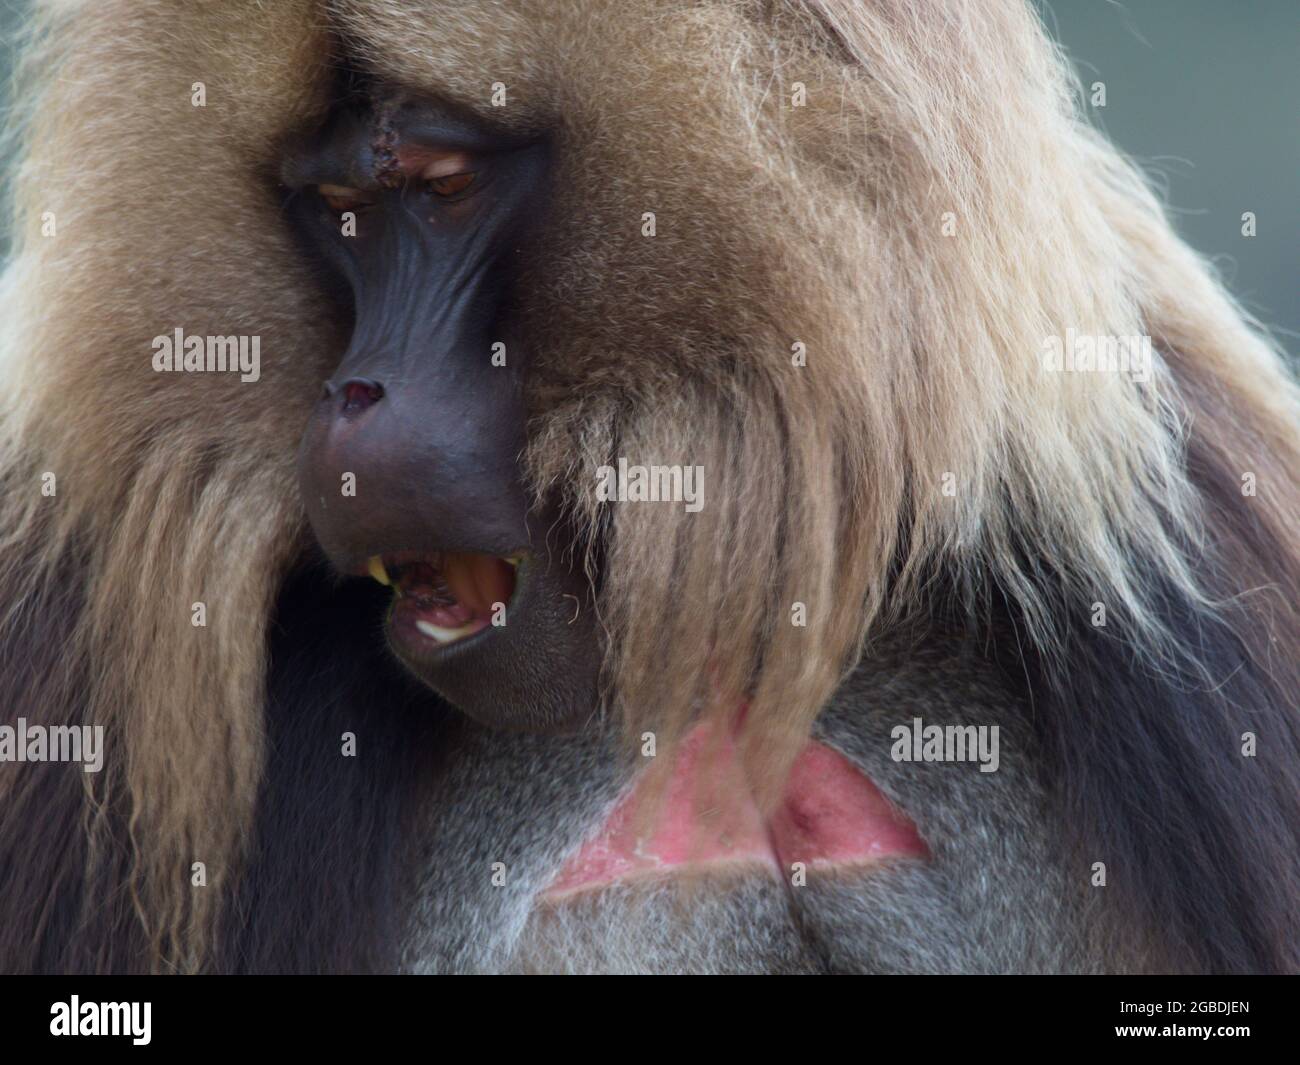 Extreme Nahaufnahme eines erwachsenen Gelada-Affen (Thermopithecus gelada) Gesicht, das direkt auf die Kamera blickt und Zähne zeigt, Simien Mountains, Äthiopien. Stockfoto